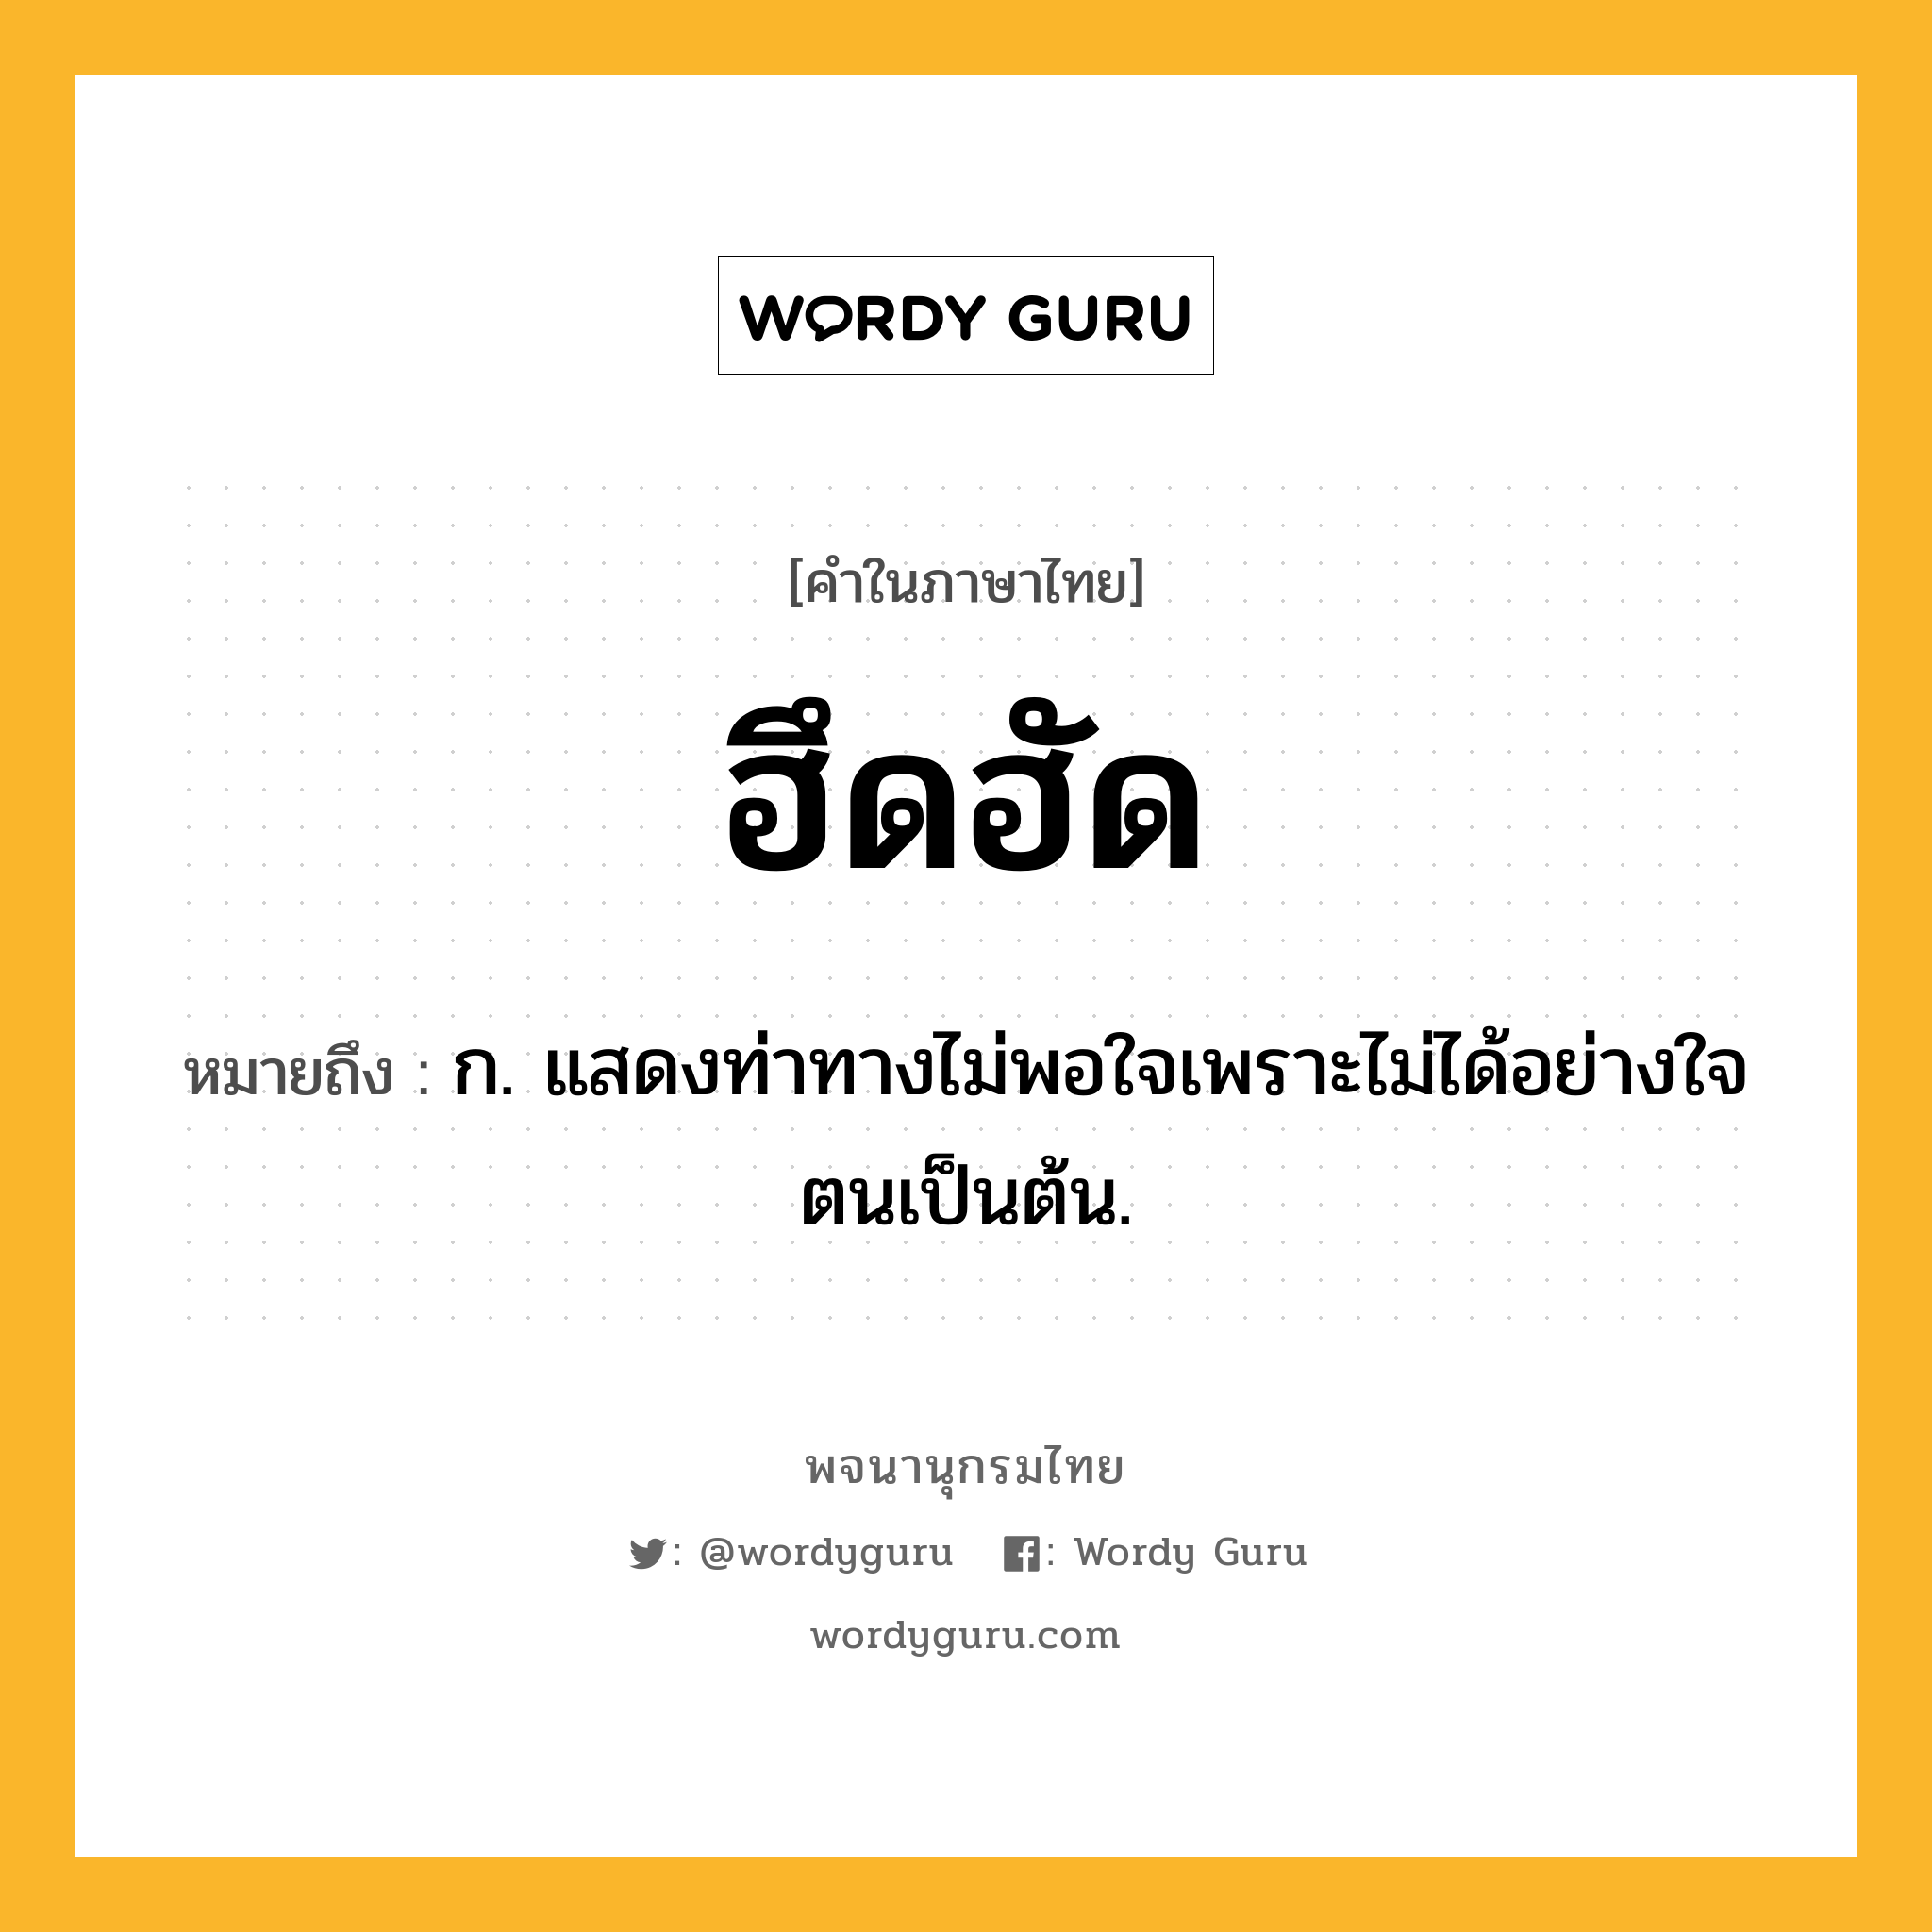 ฮึดฮัด ความหมาย หมายถึงอะไร?, คำในภาษาไทย ฮึดฮัด หมายถึง ก. แสดงท่าทางไม่พอใจเพราะไม่ได้อย่างใจตนเป็นต้น.